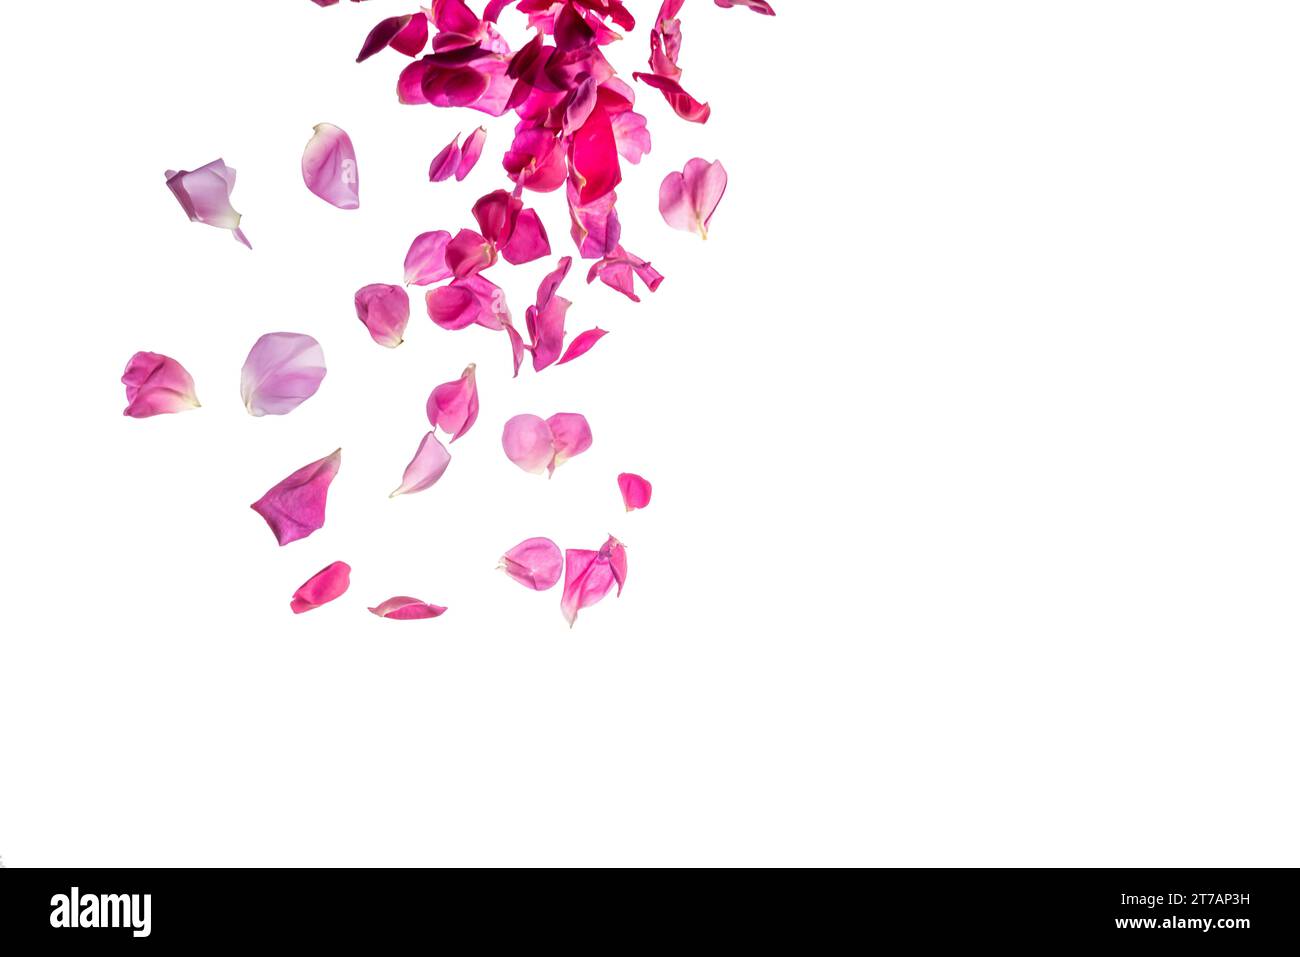 Petali rosa profondi che cadono dall'alto, isolati su bianco con percorso di ritaglio, spazio per copiare Foto Stock